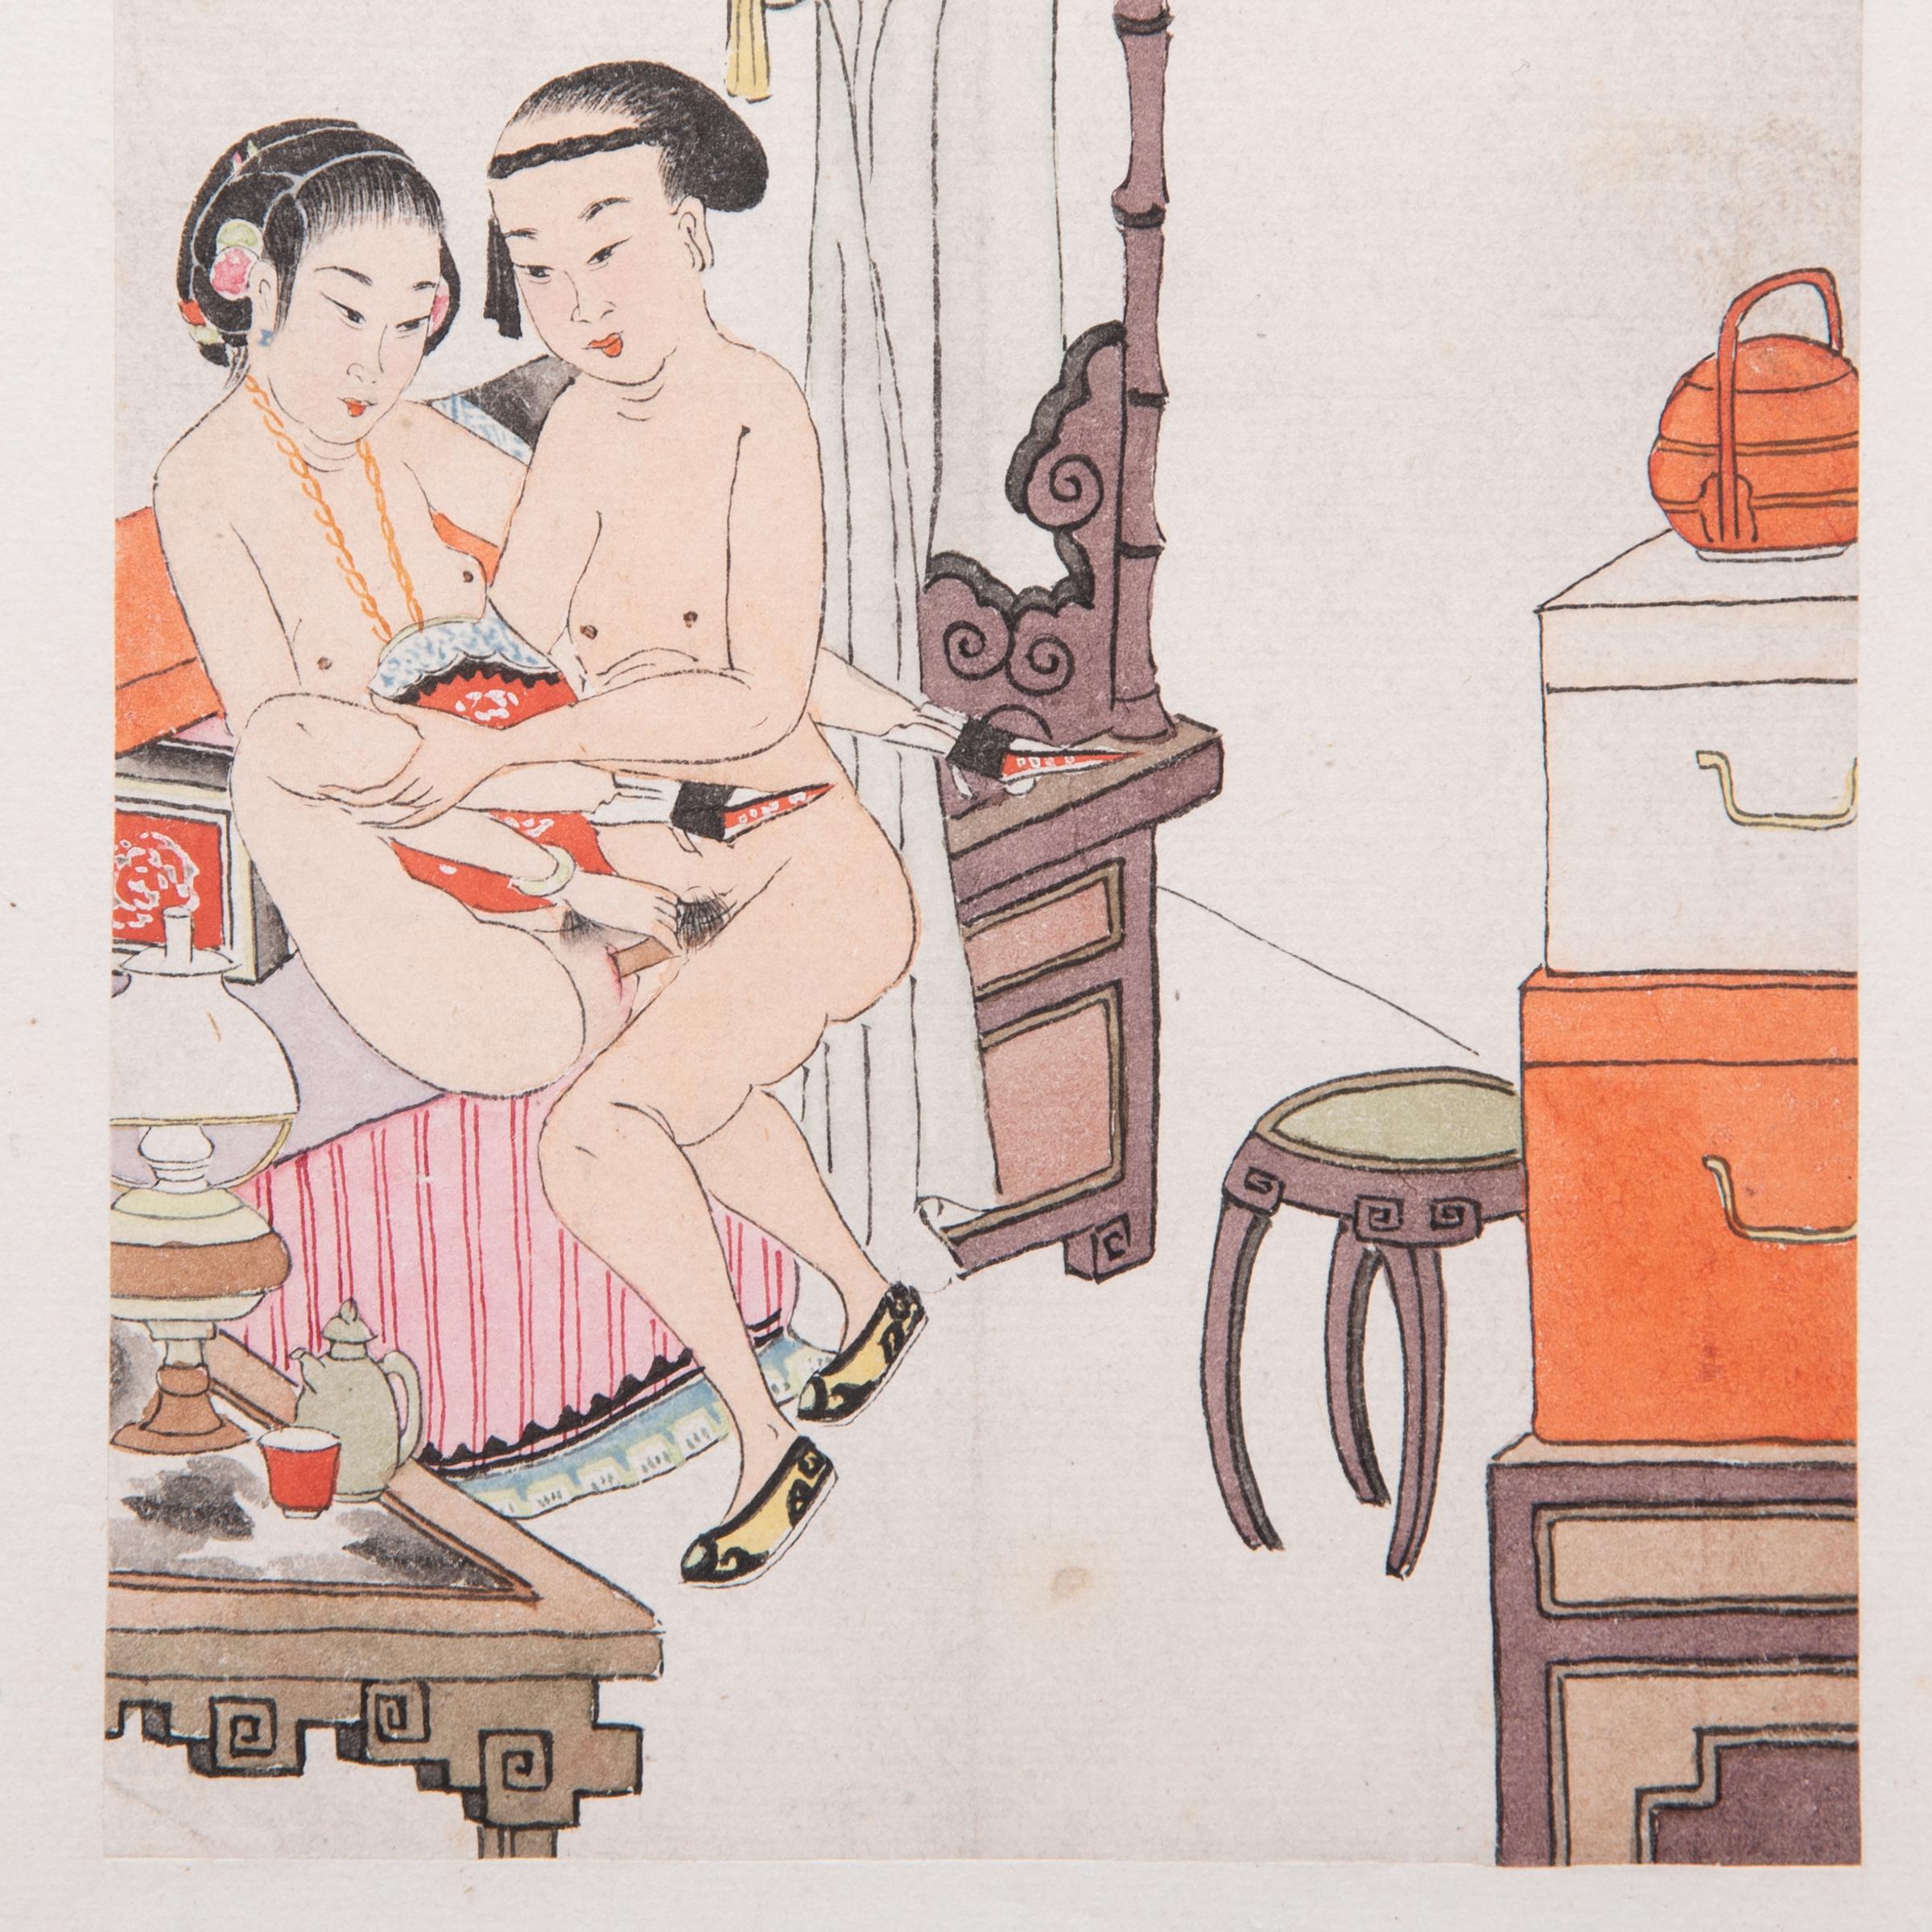 Album feuille d'album érotique chinois, vers 1850 - Qing Art par Unknown